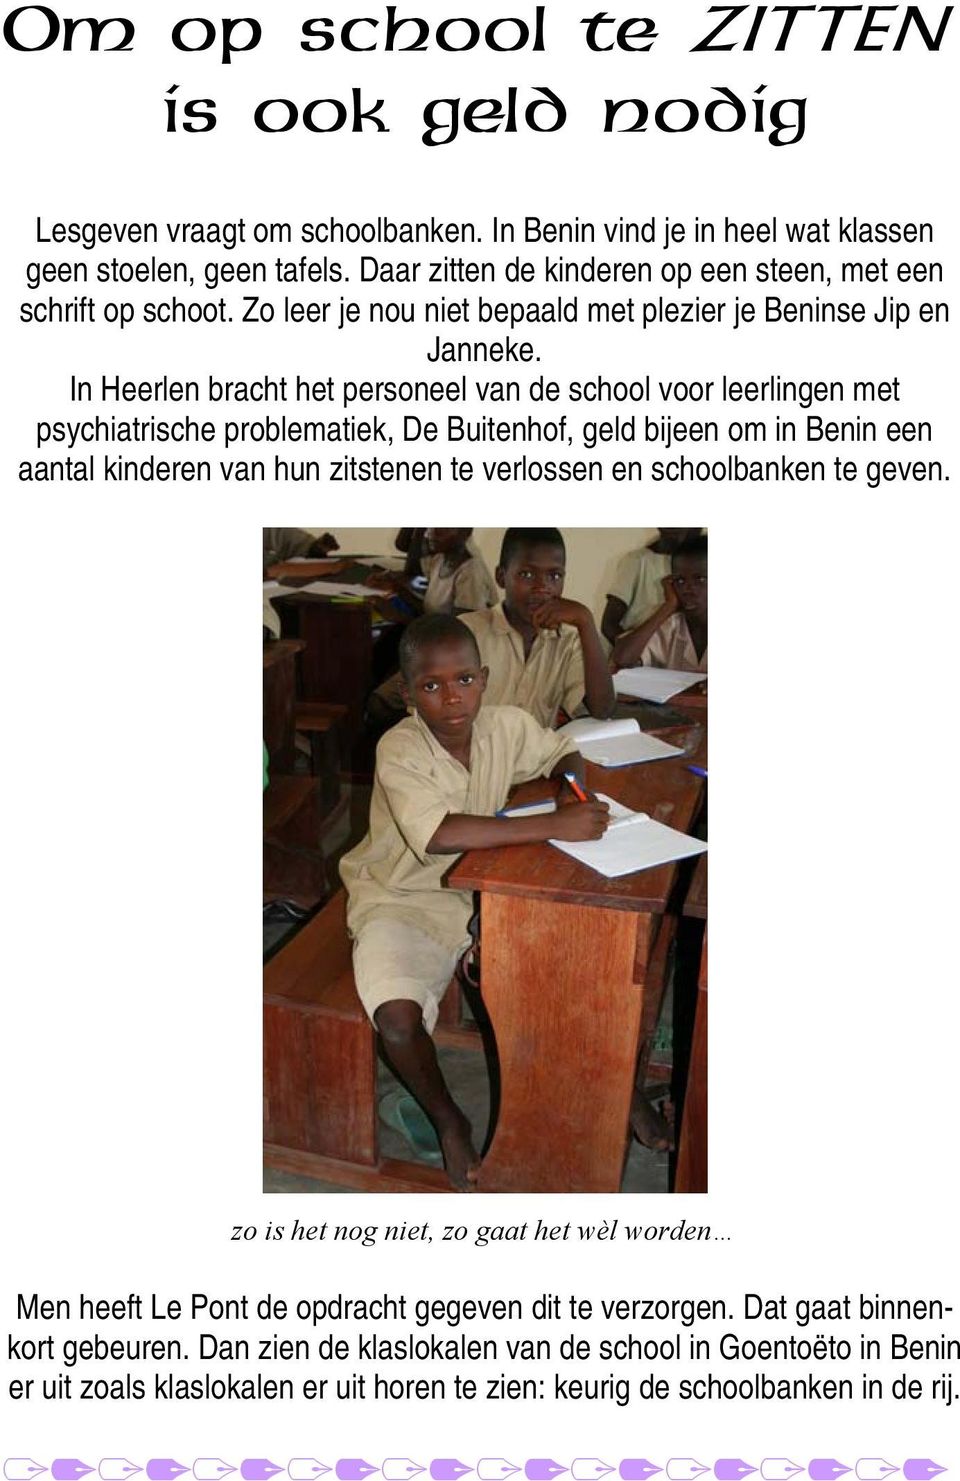 In Heerlen bracht het personeel van de school voor leerlingen met psychiatrische problematiek, De Buitenhof, geld bijeen om in Benin een aantal kinderen van hun zitstenen te verlossen en